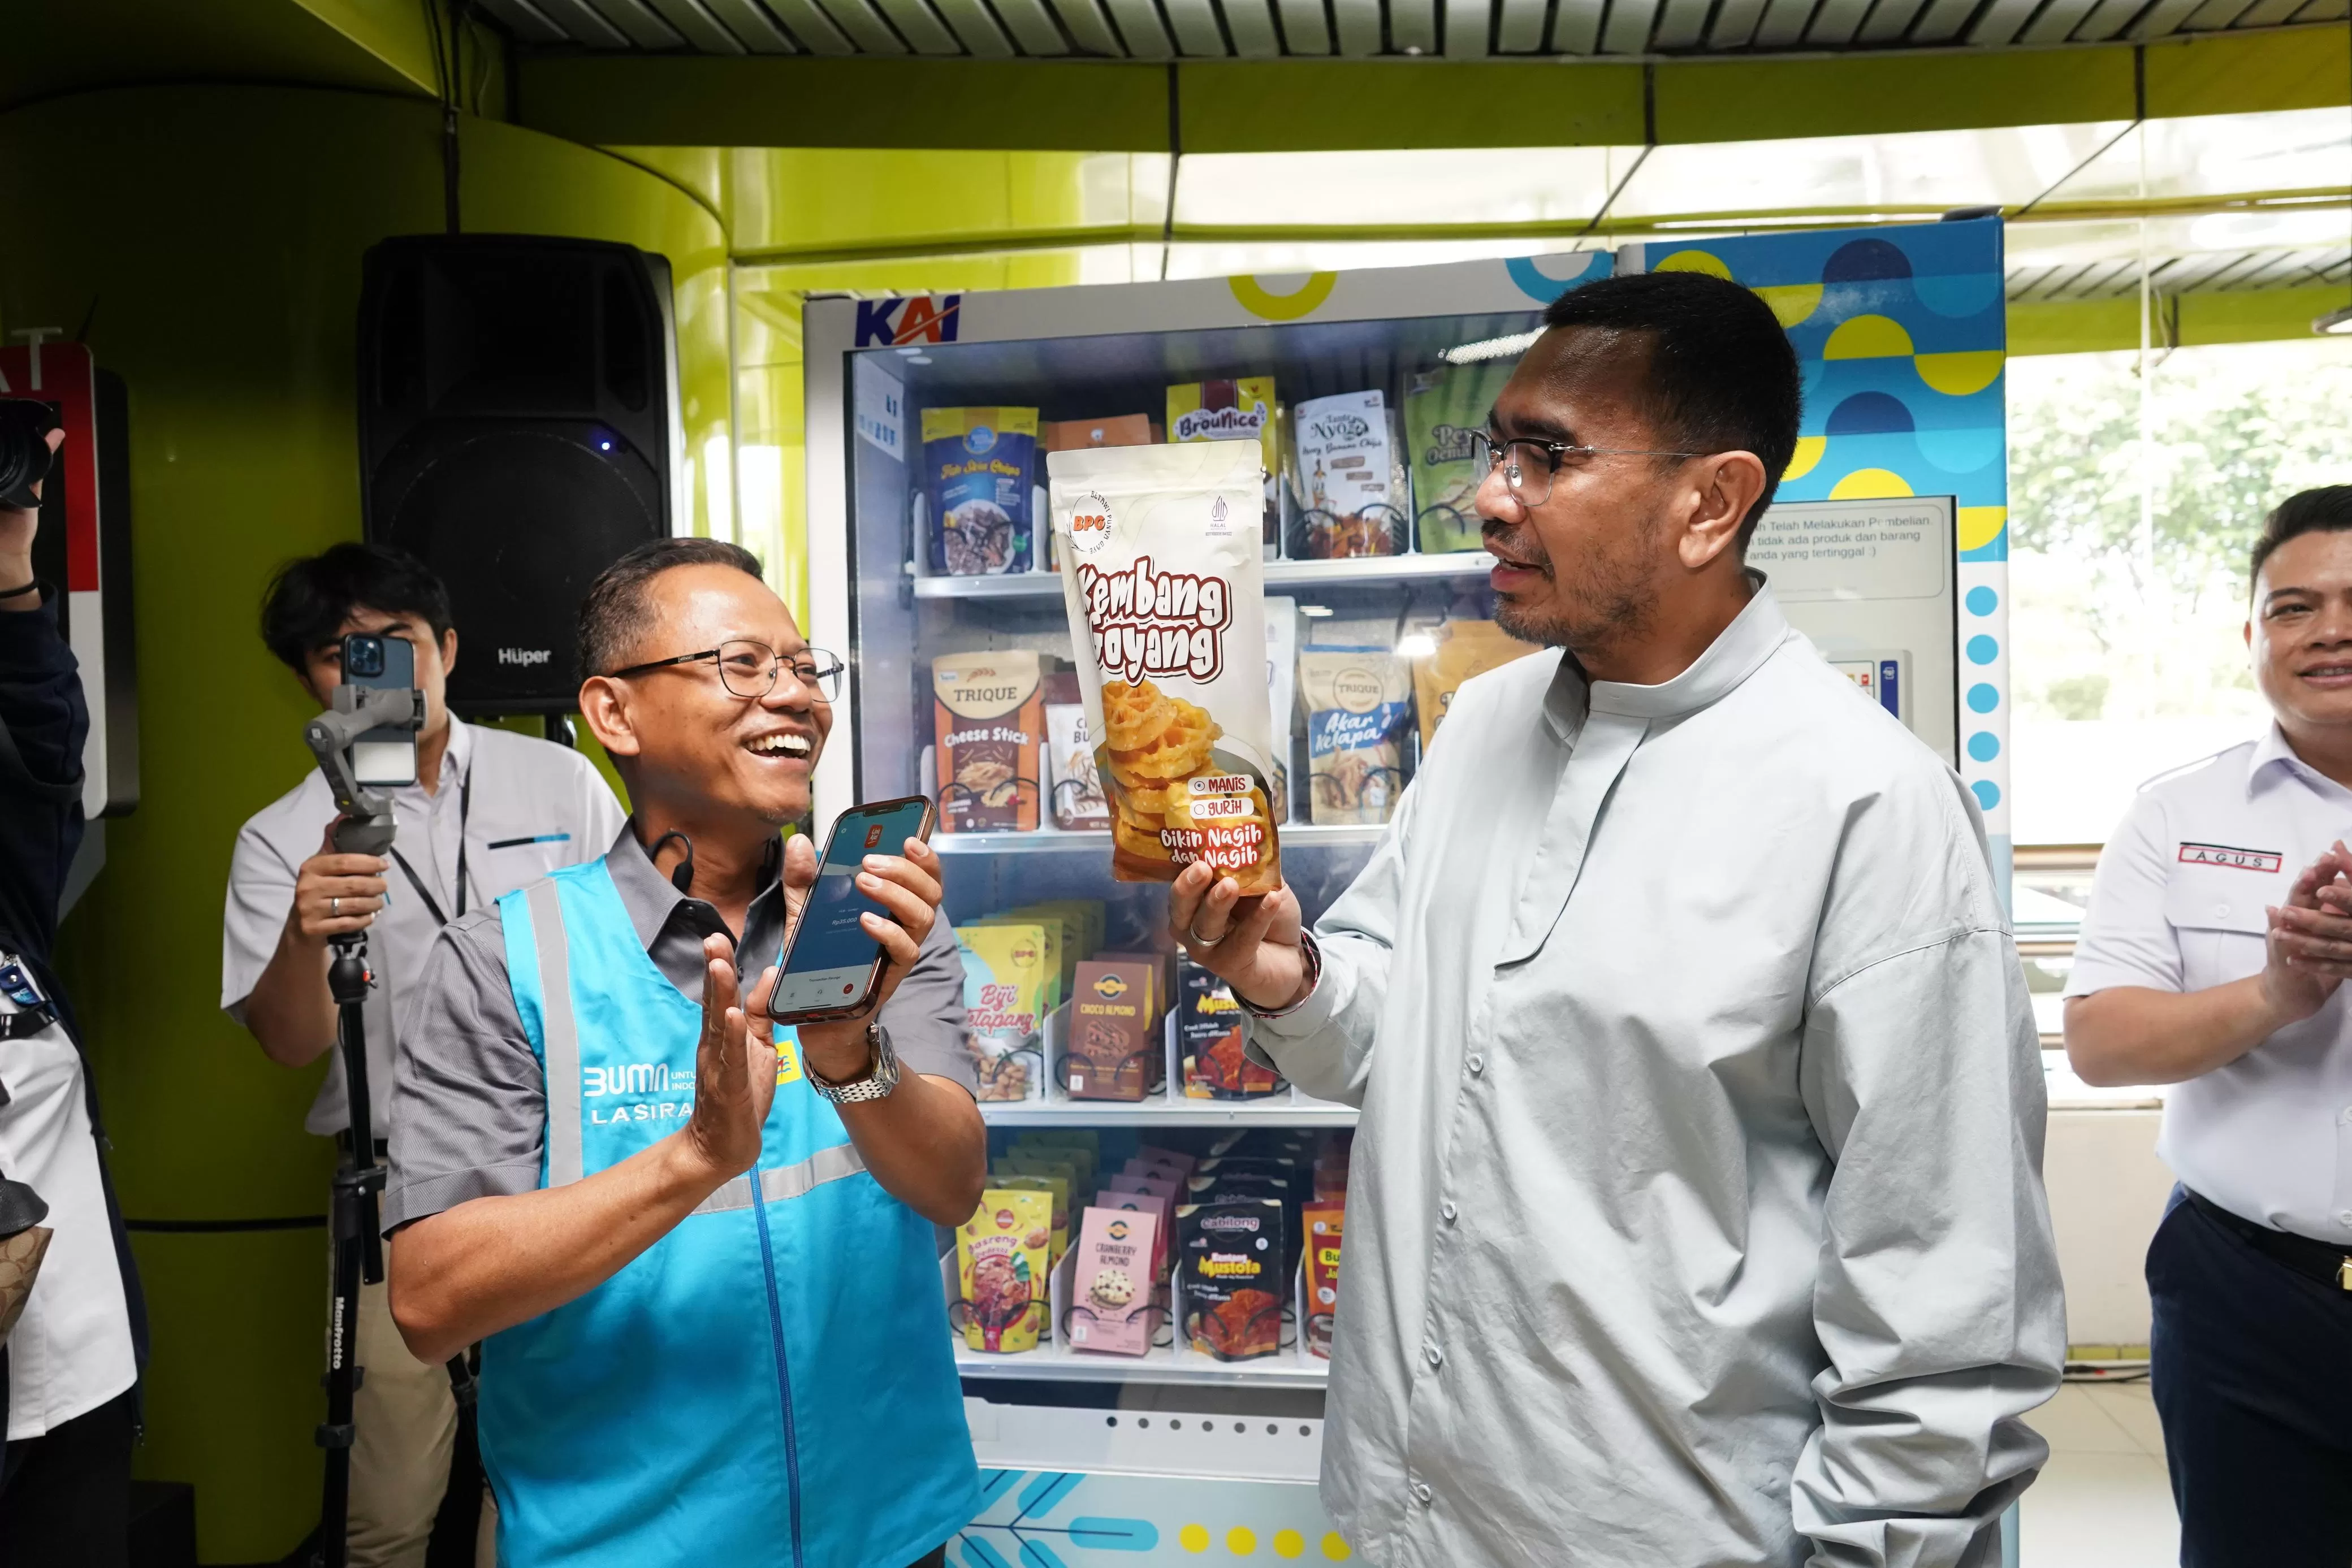 Kolaborasi dengan KAI, PLN Sediakan Oleh-oleh Khas Jakarta, Bisa Dibeli di Vending Machine UMKM Stasiun Gambir